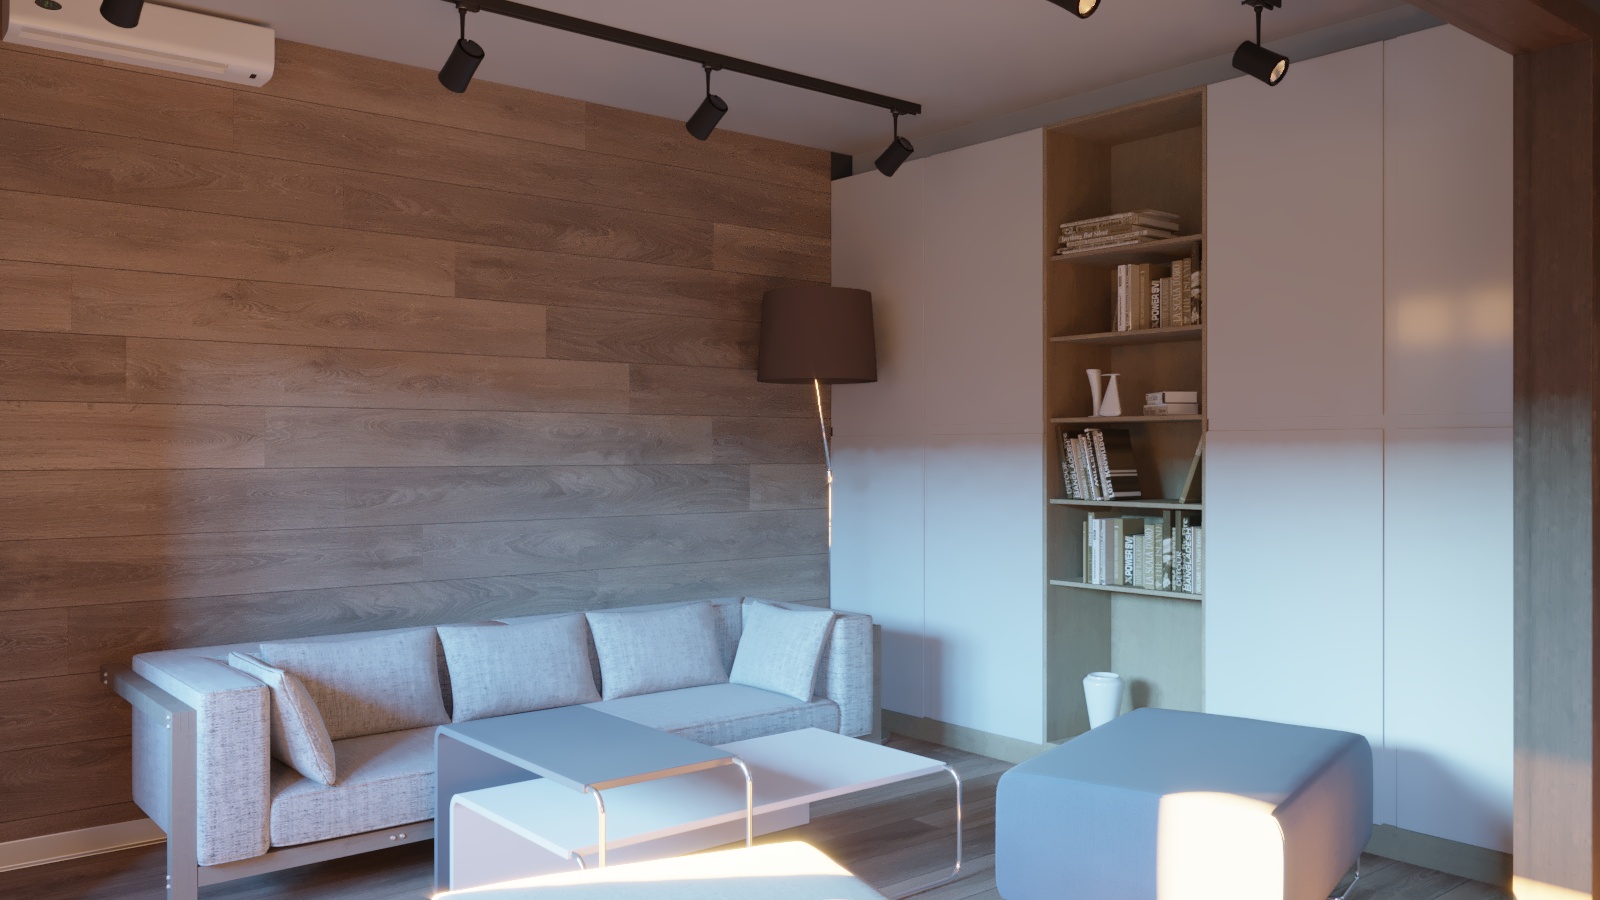 एक छोटे से रहने वाले कमरे के साथ रसोईघर 3d max corona render में प्रस्तुत छवि